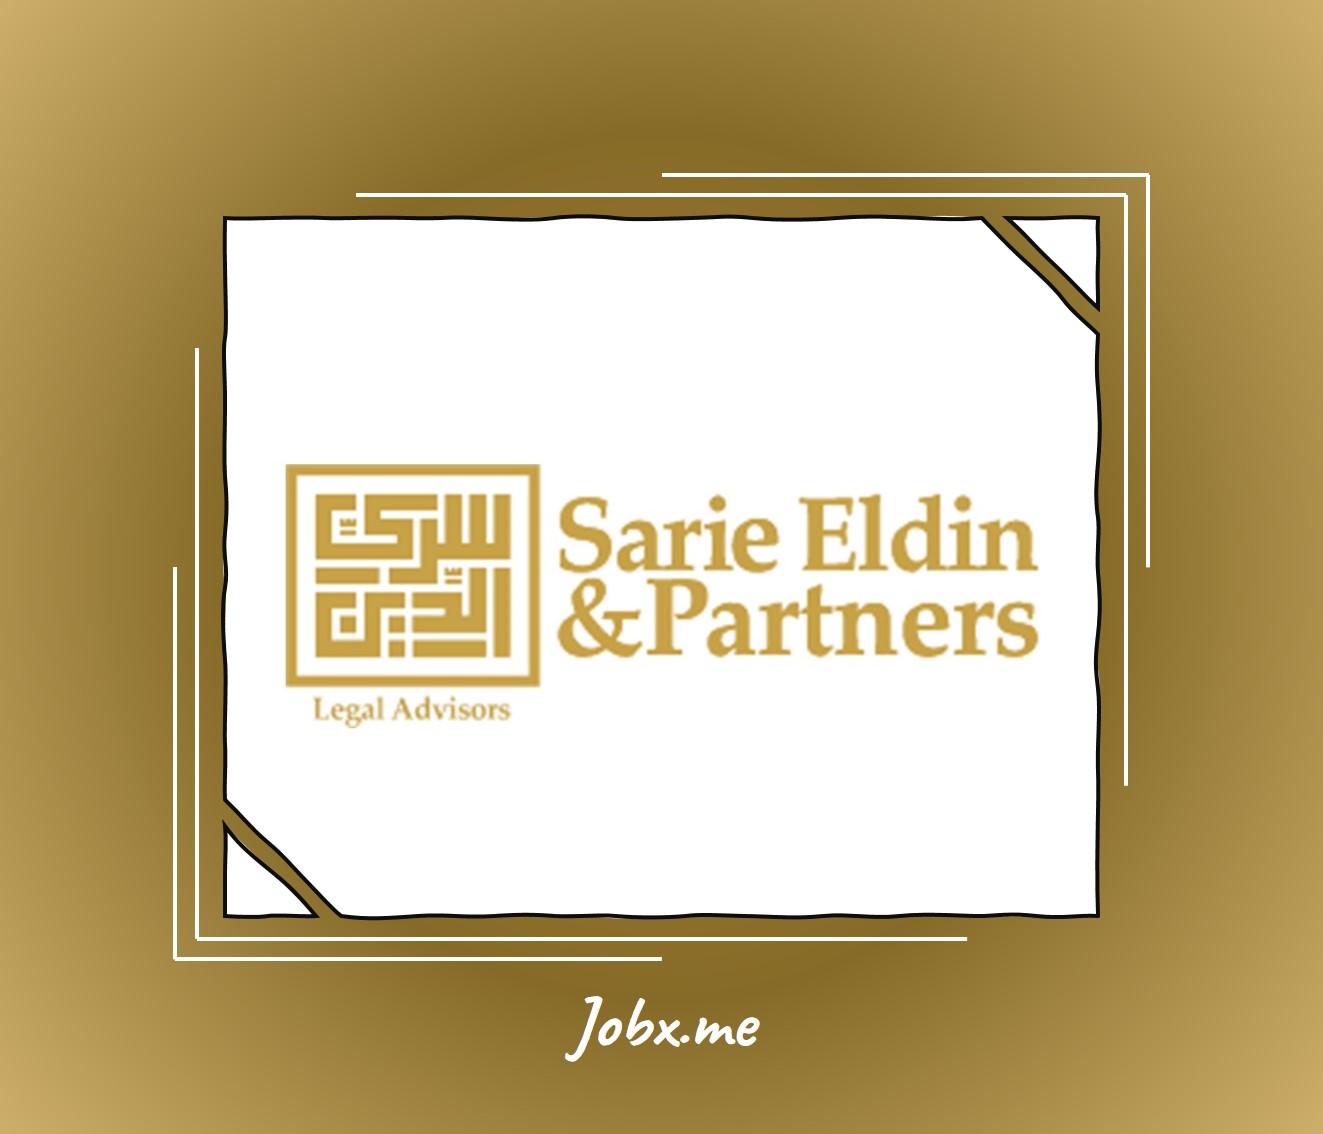 Sarie Eldin Careers